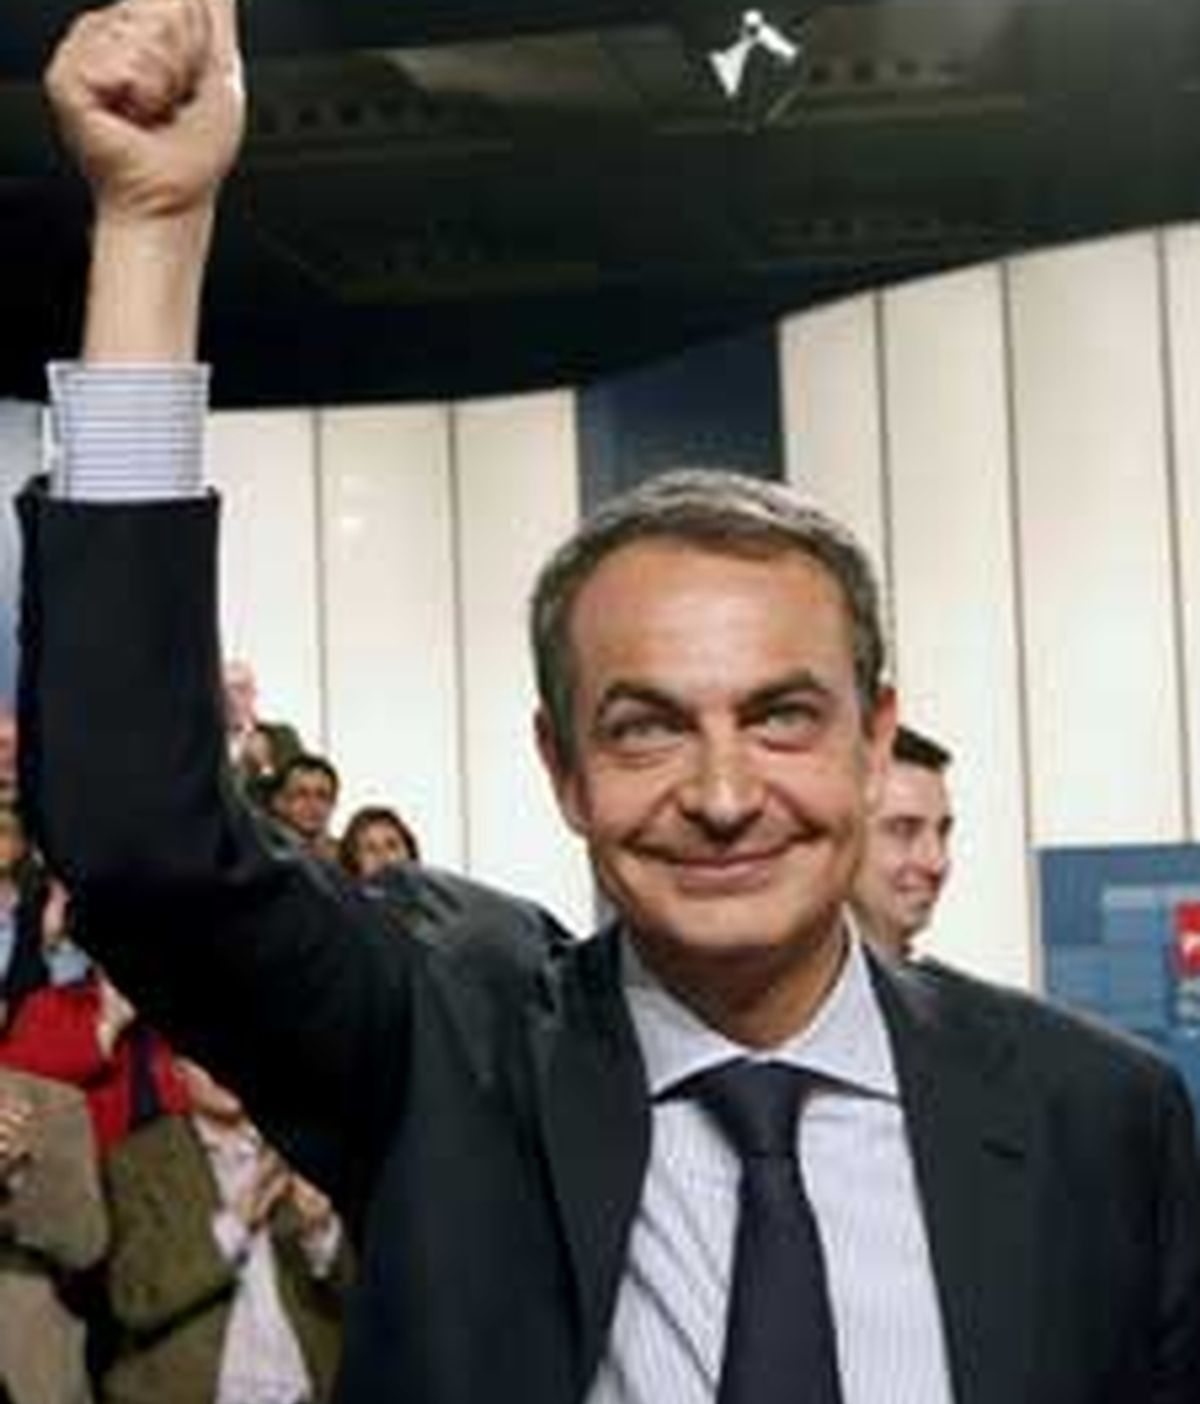 Zapatero ha hecho la promesa durante la reunión con alcaldes socialistas, portavoces municipales y presidentes de diputaciones gobernadas por el partido. Video: Atlas